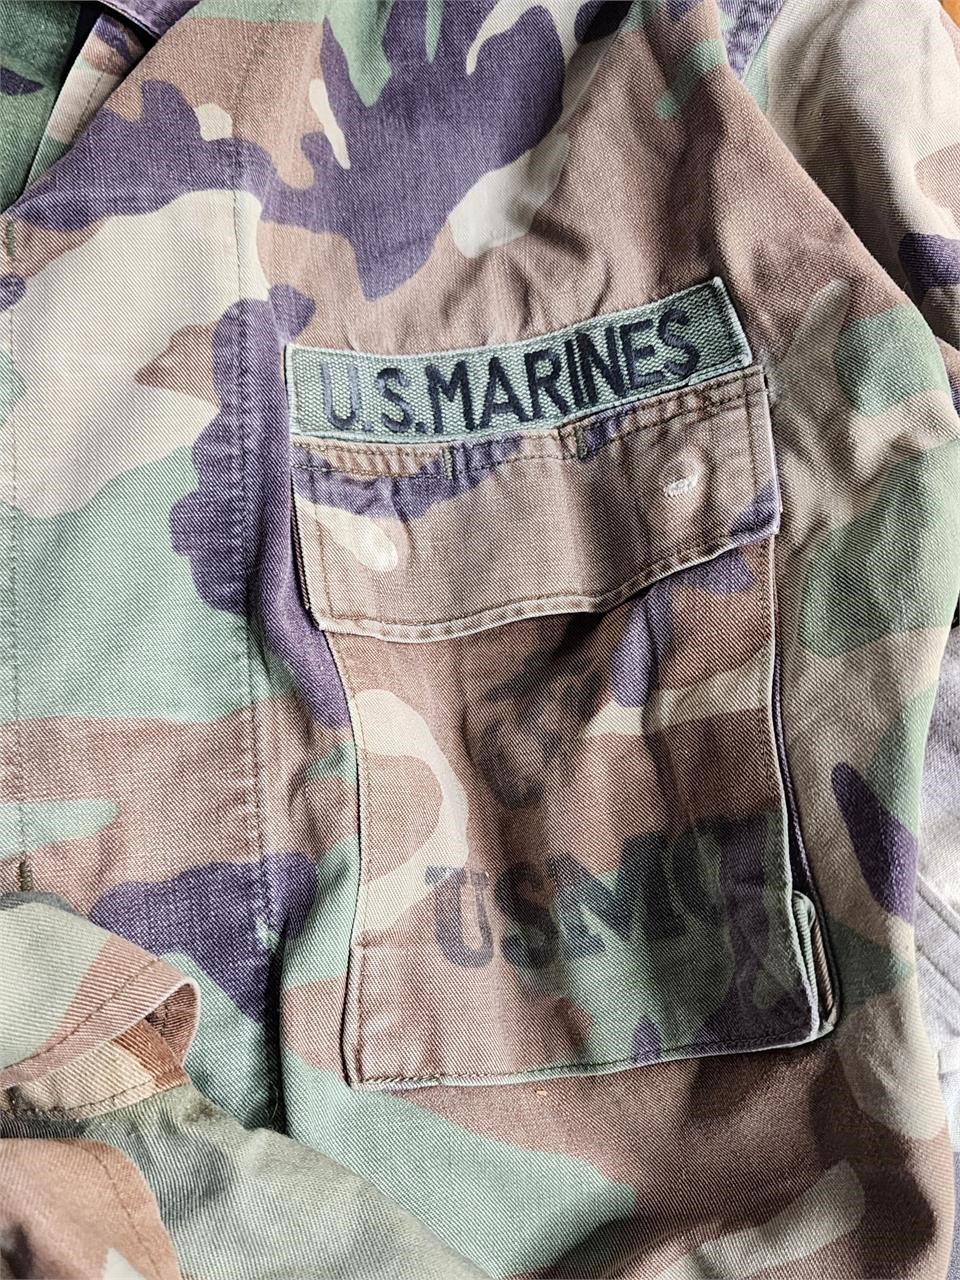 USMC Military BDU's camo.